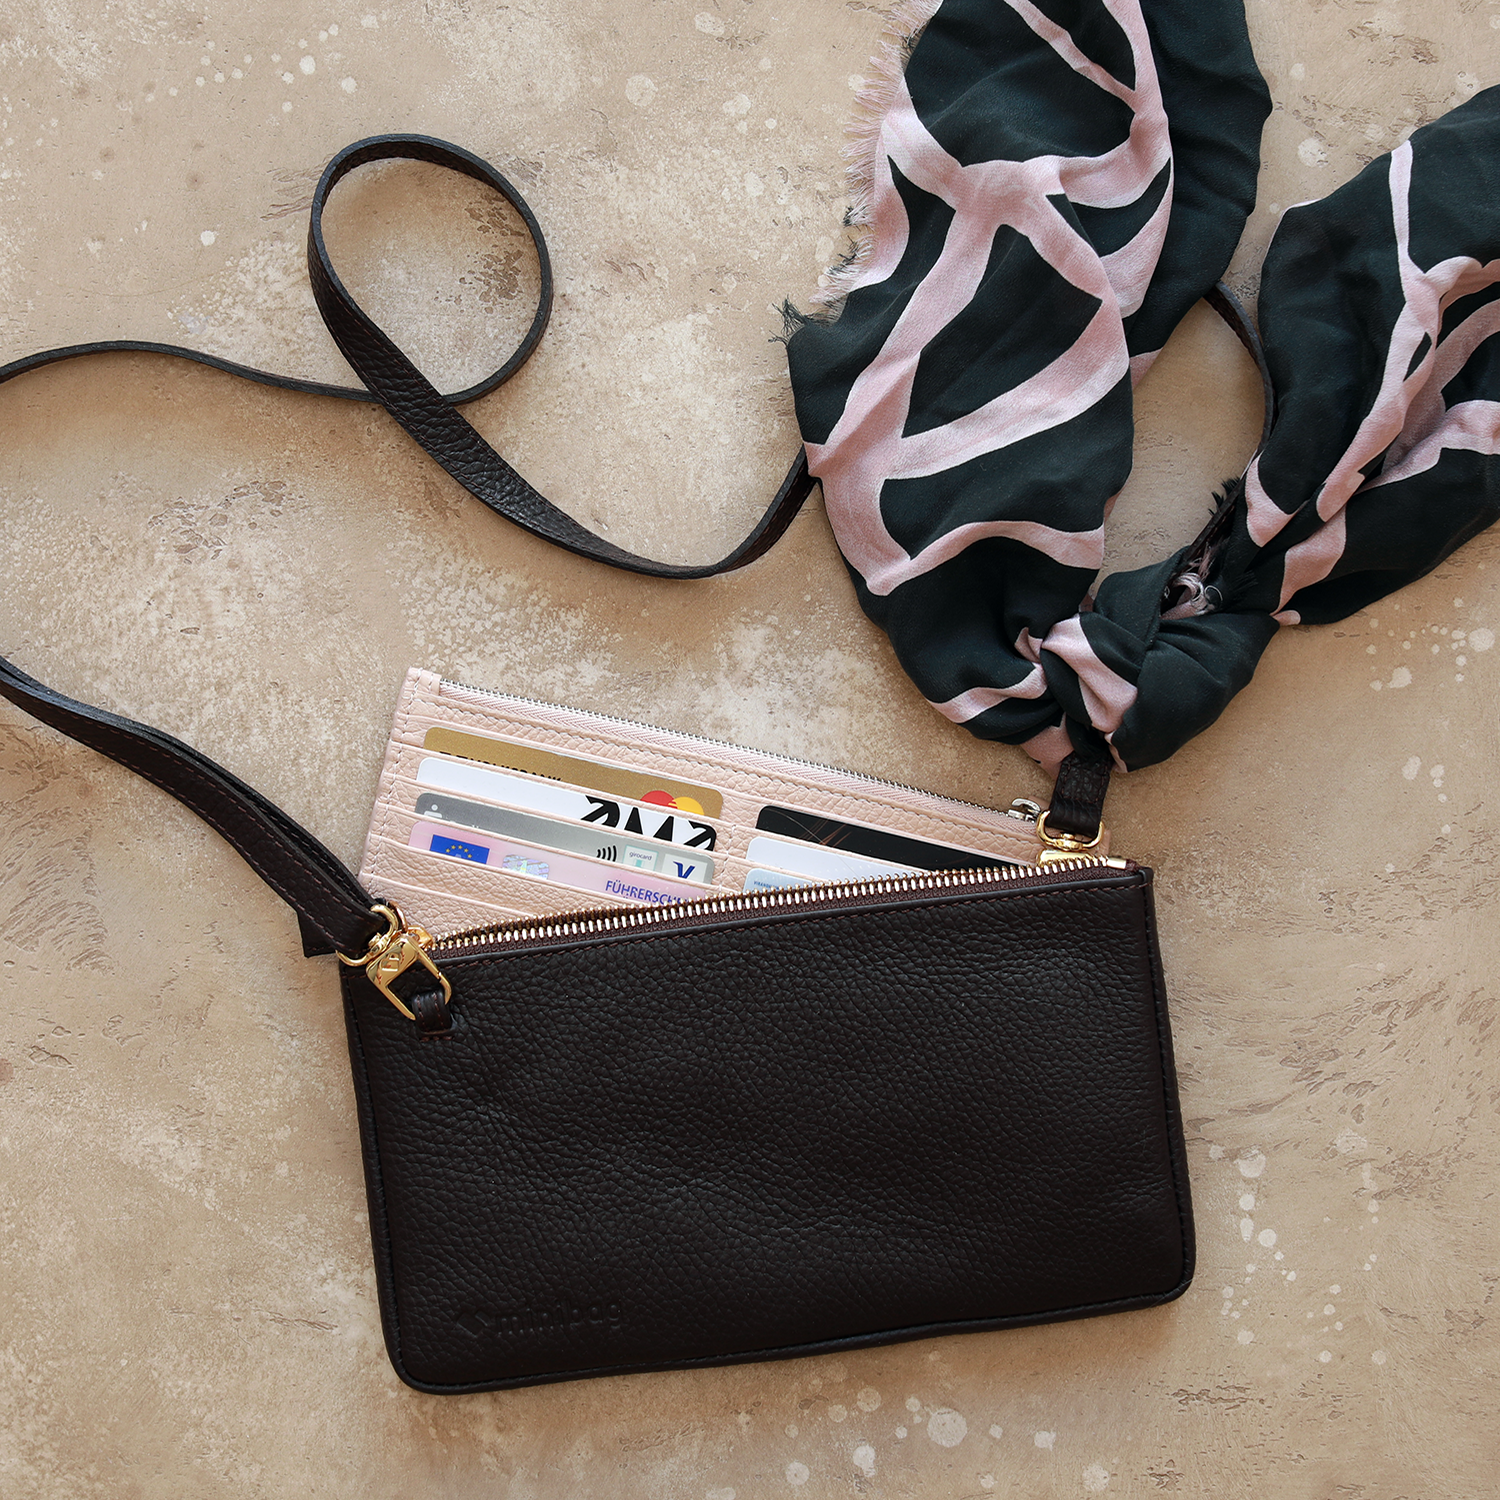 minibag black Edition GOLD, schwarze Ledertasche, minibag Wallet nude, Geldtasche zum Umhängen